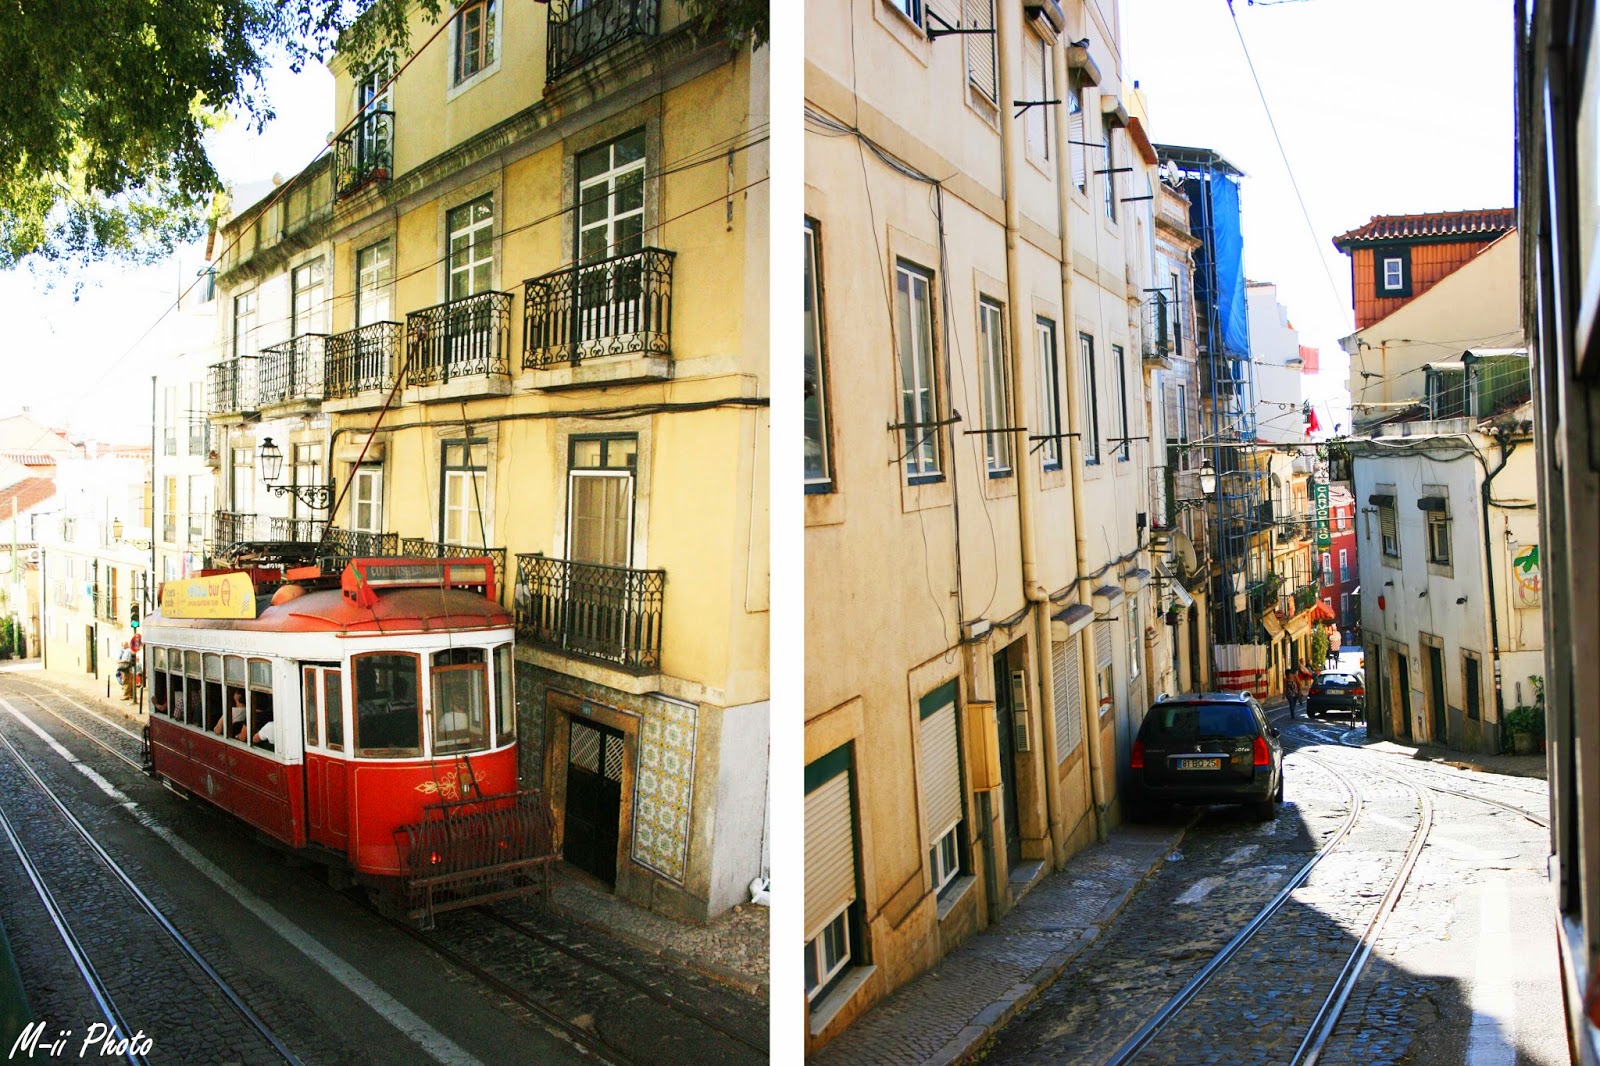 M-ii Photo : 10 choses à faire à Lisbonne 